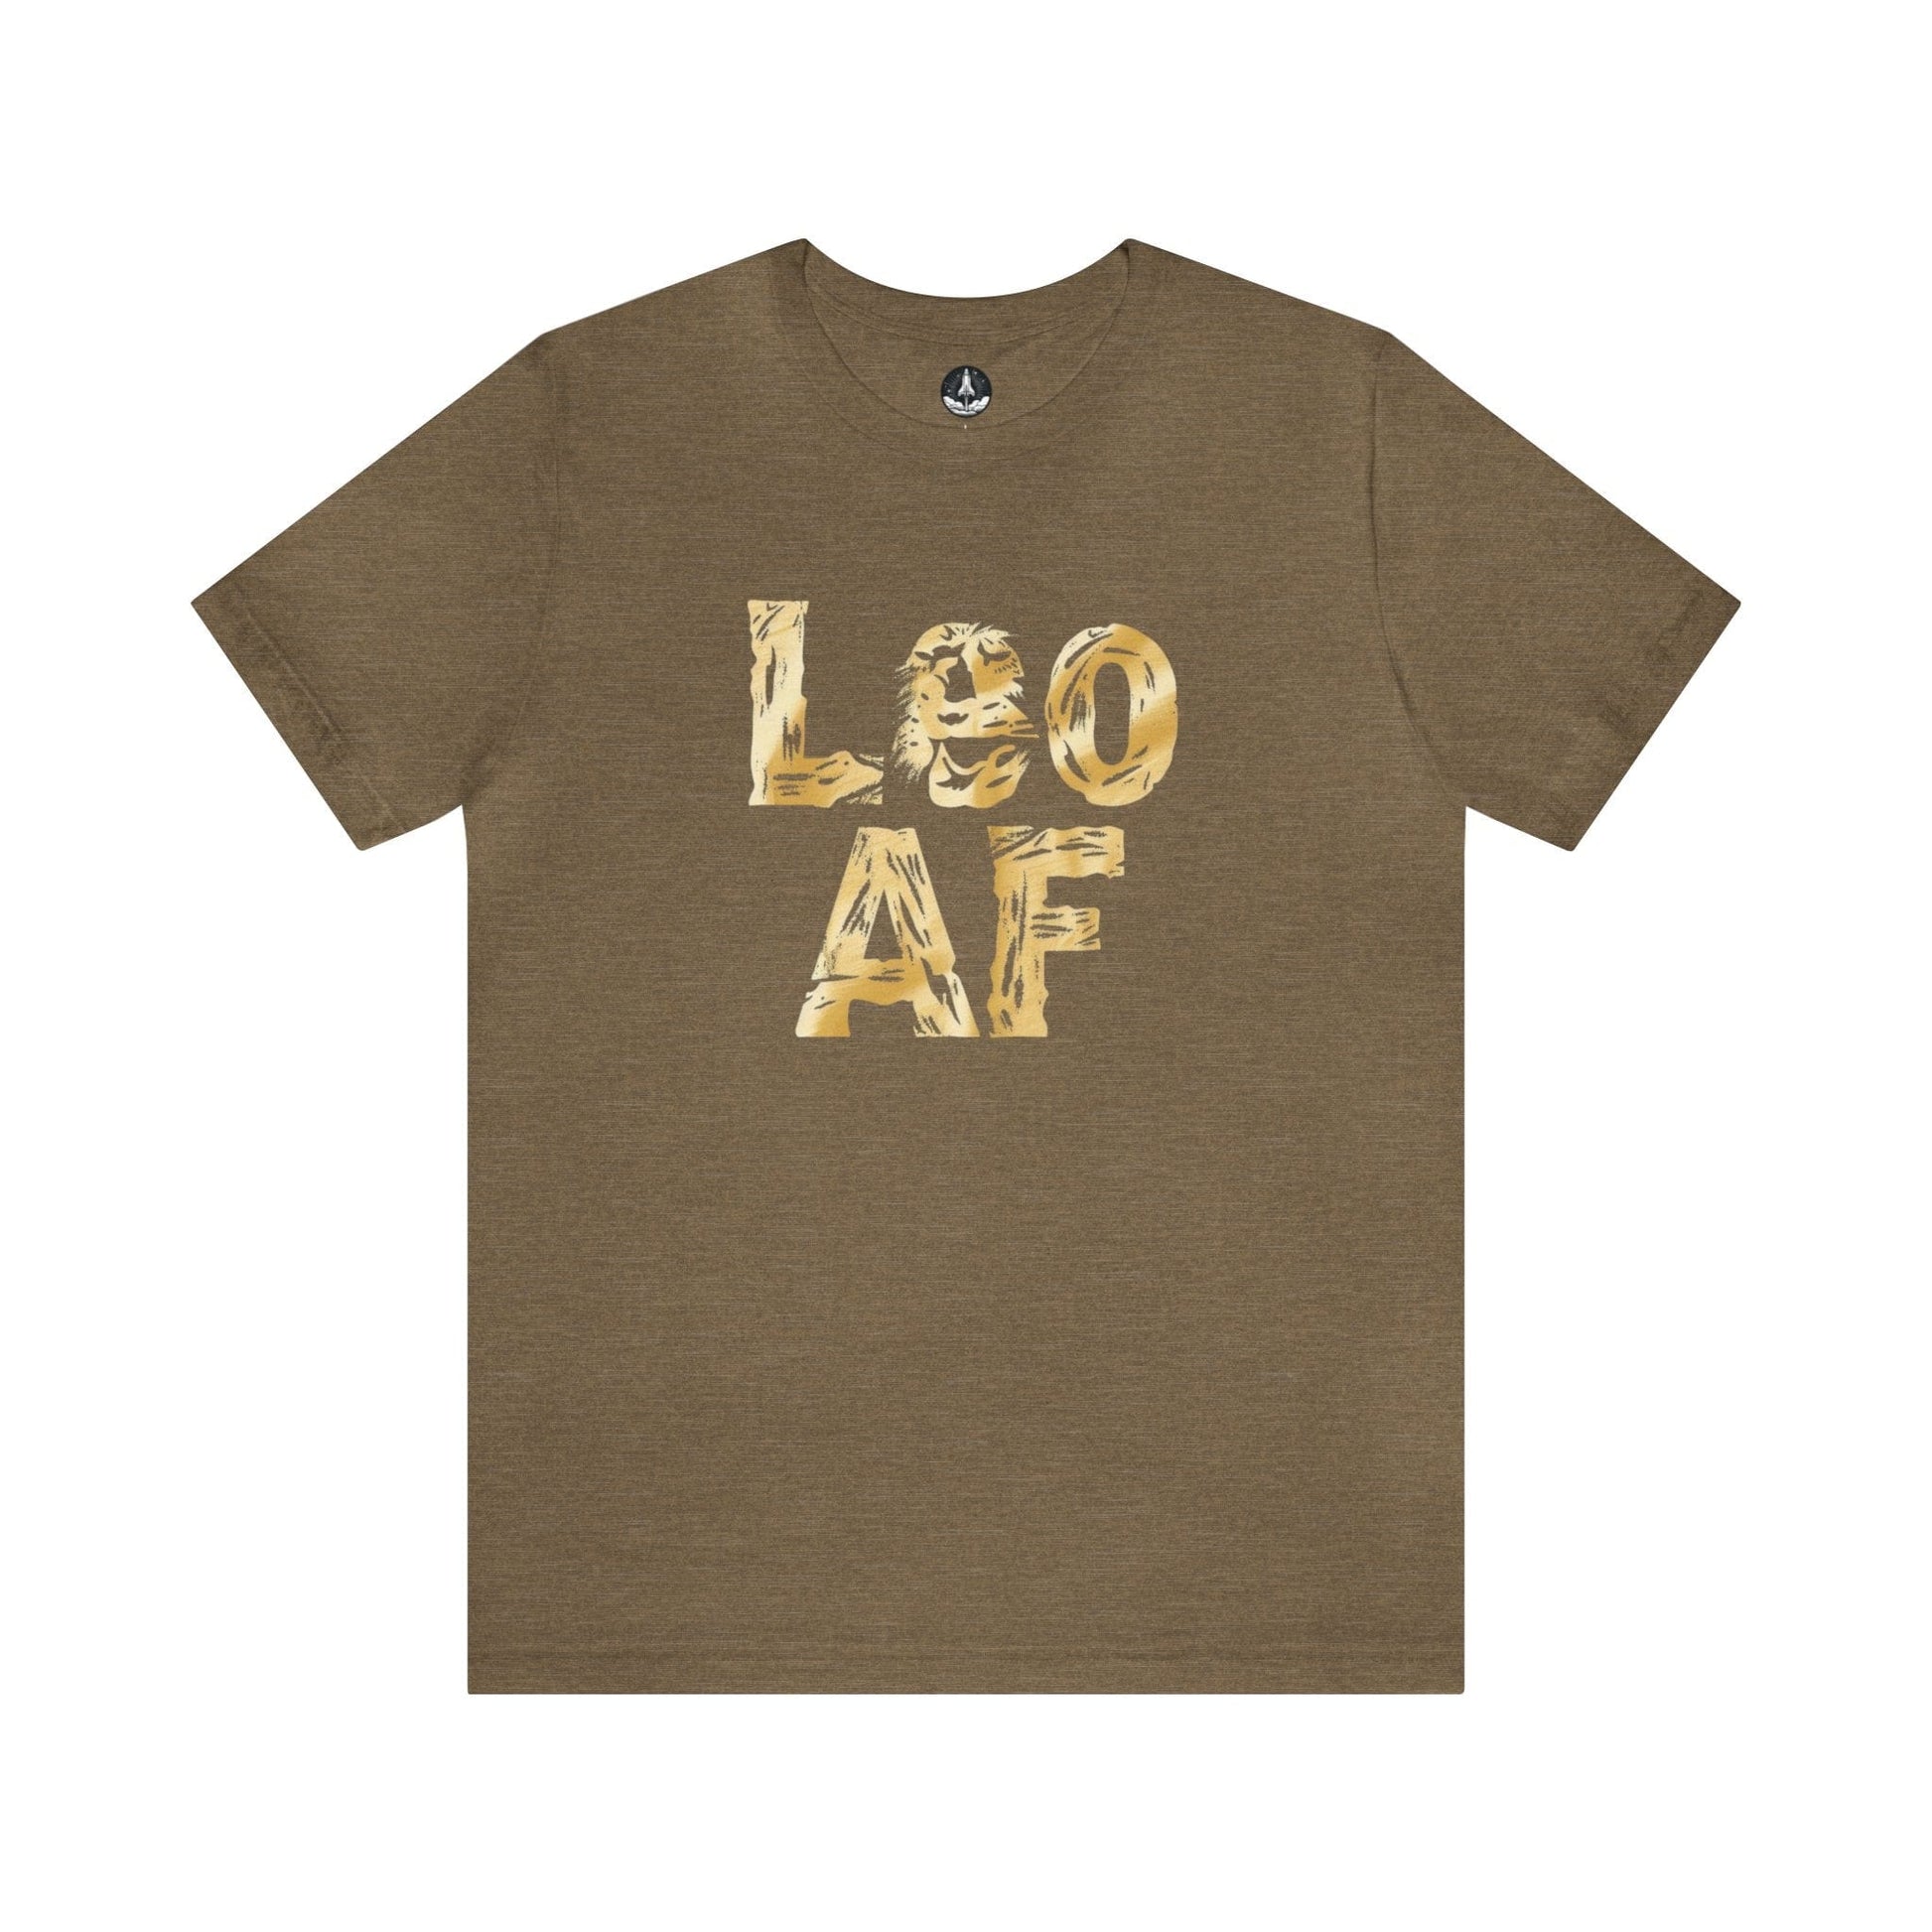 T-Shirt Heather Olive / S Leo AF T-Shirt